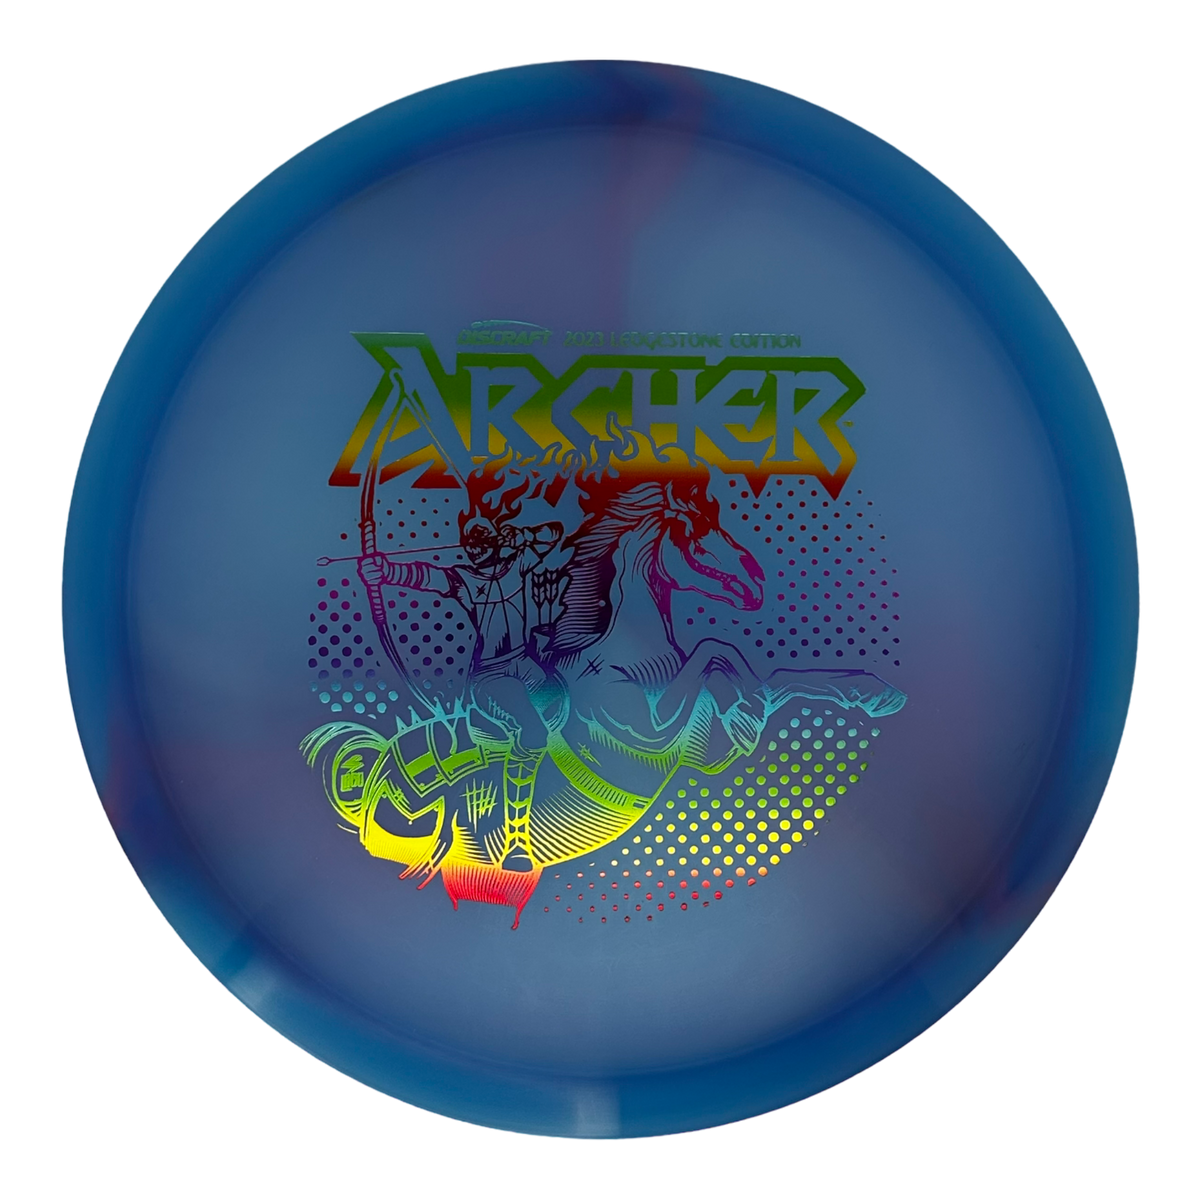 Discraft Z Swirl Archer - Ledgestone 2 (2023)